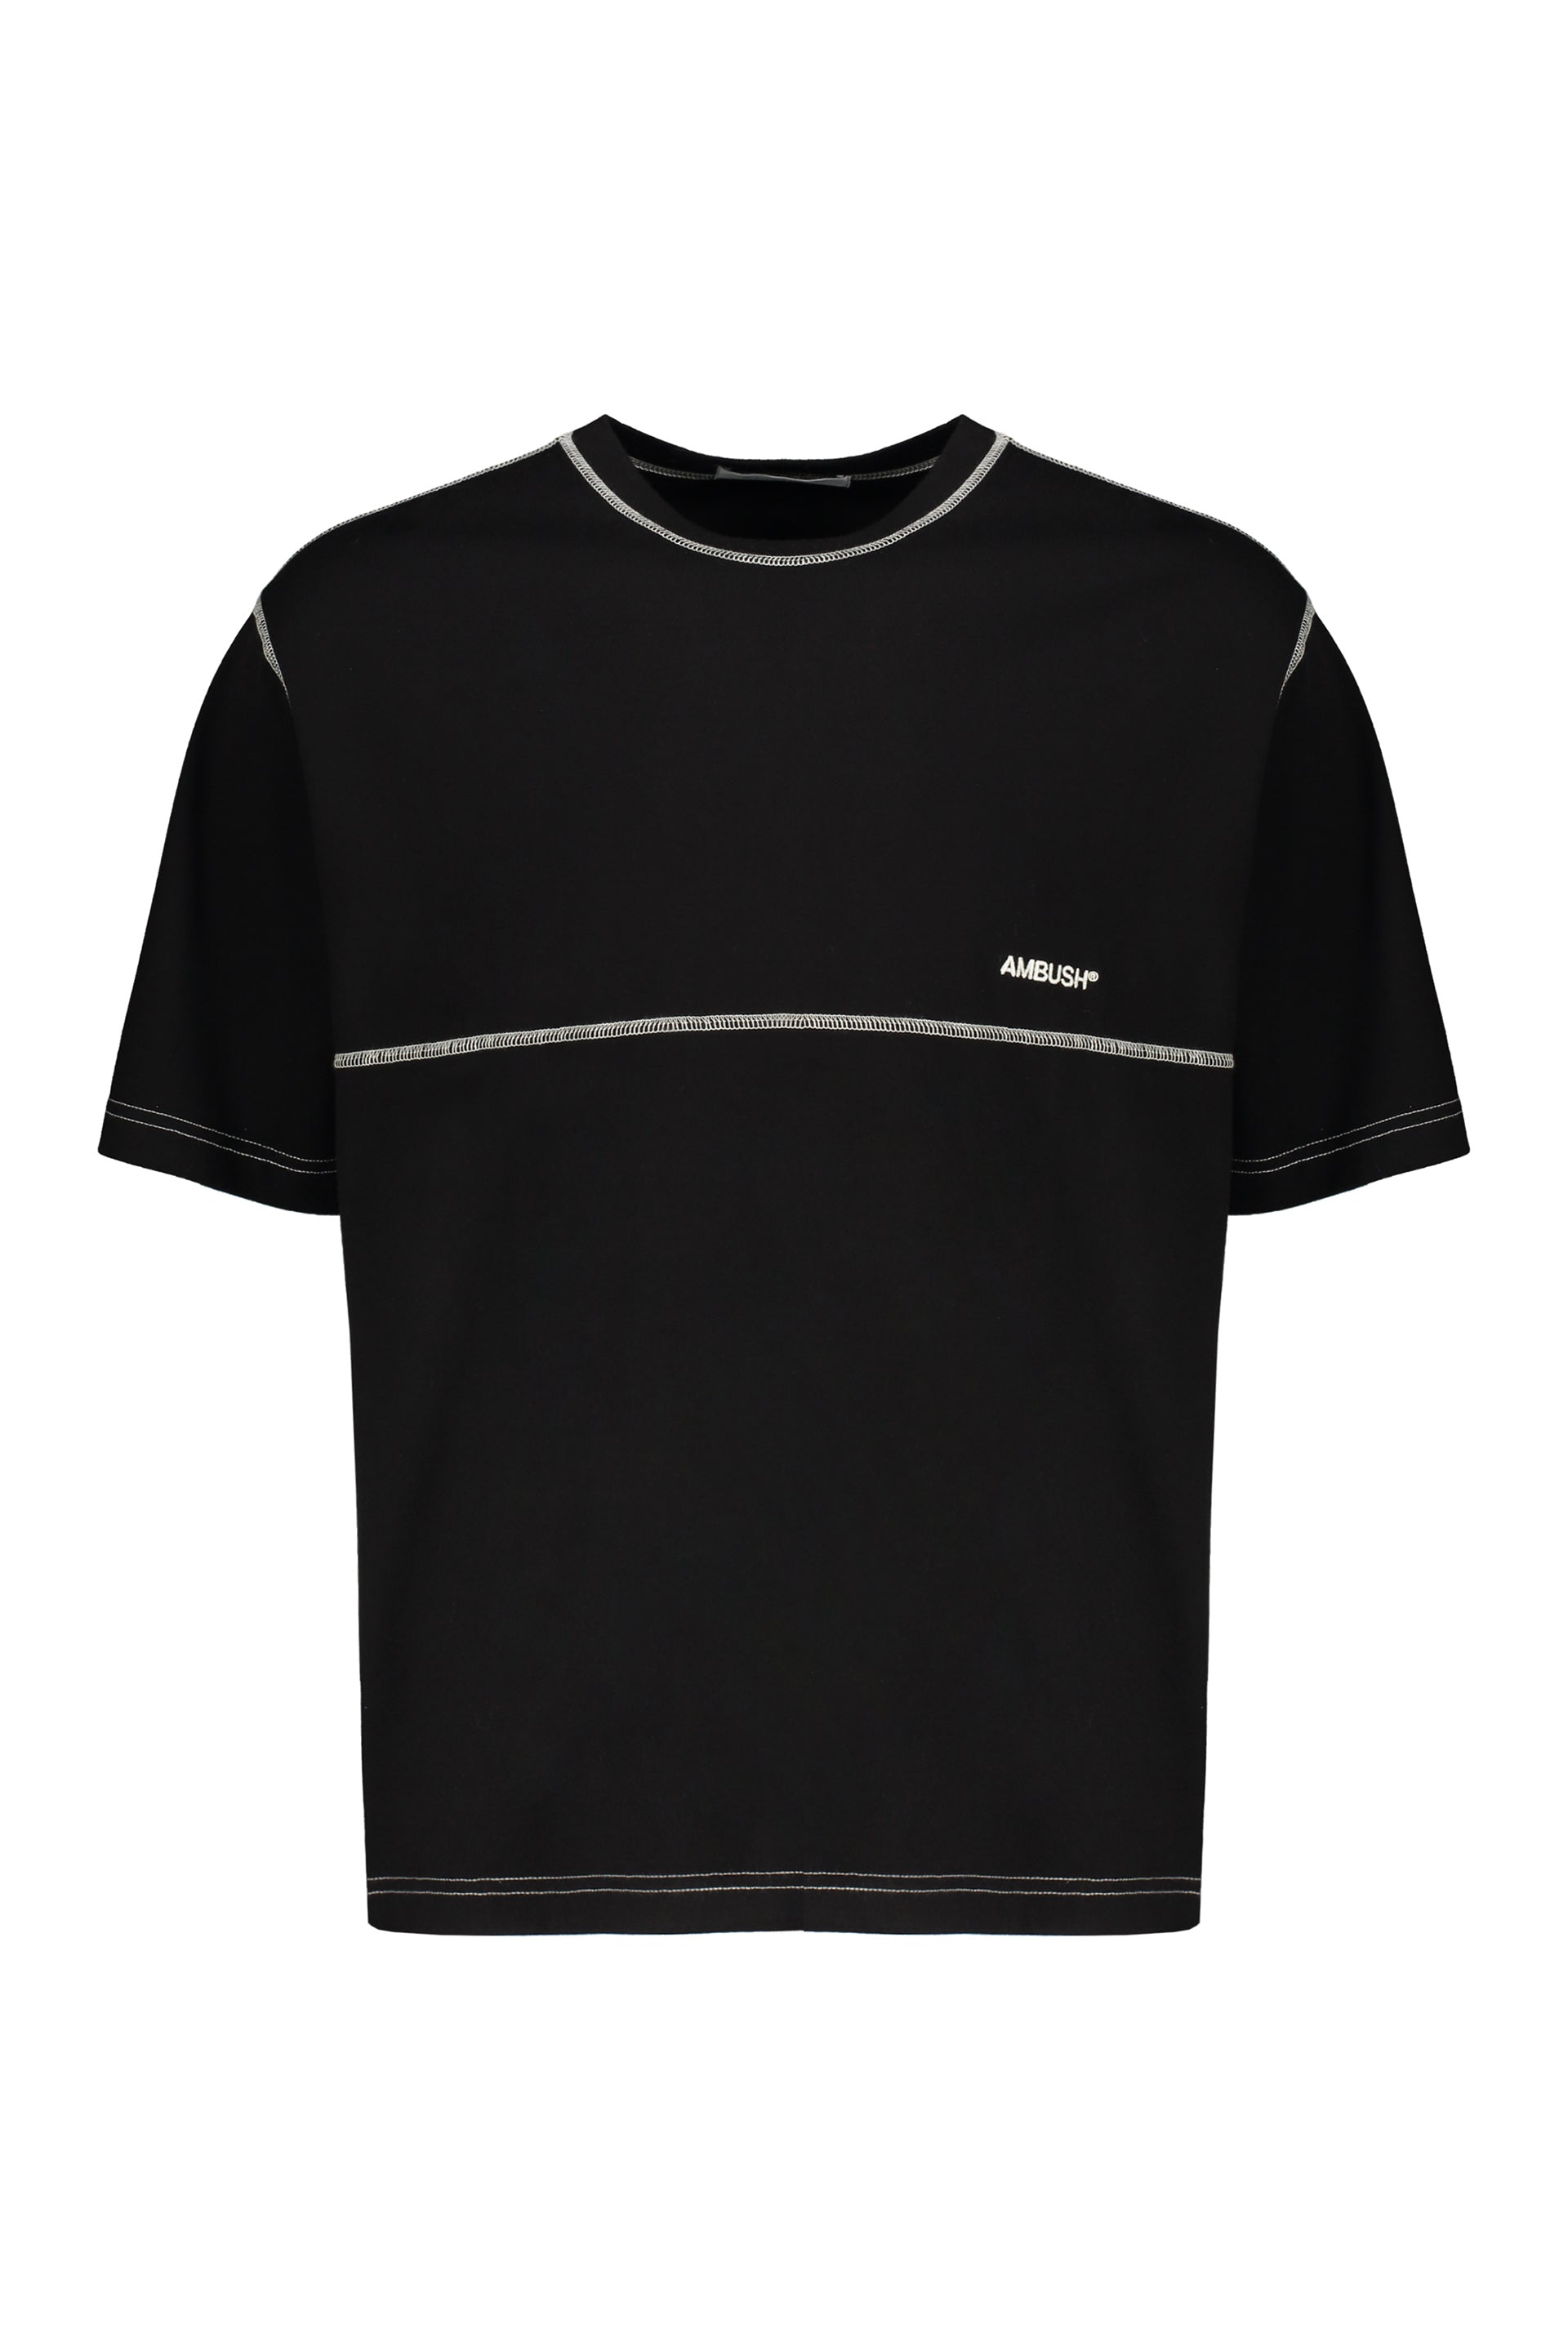 AMBUSH-OUTLET-SALE-Cotton-T-shirt-Shirts-S-ARCHIVE-COLLECTION.jpg